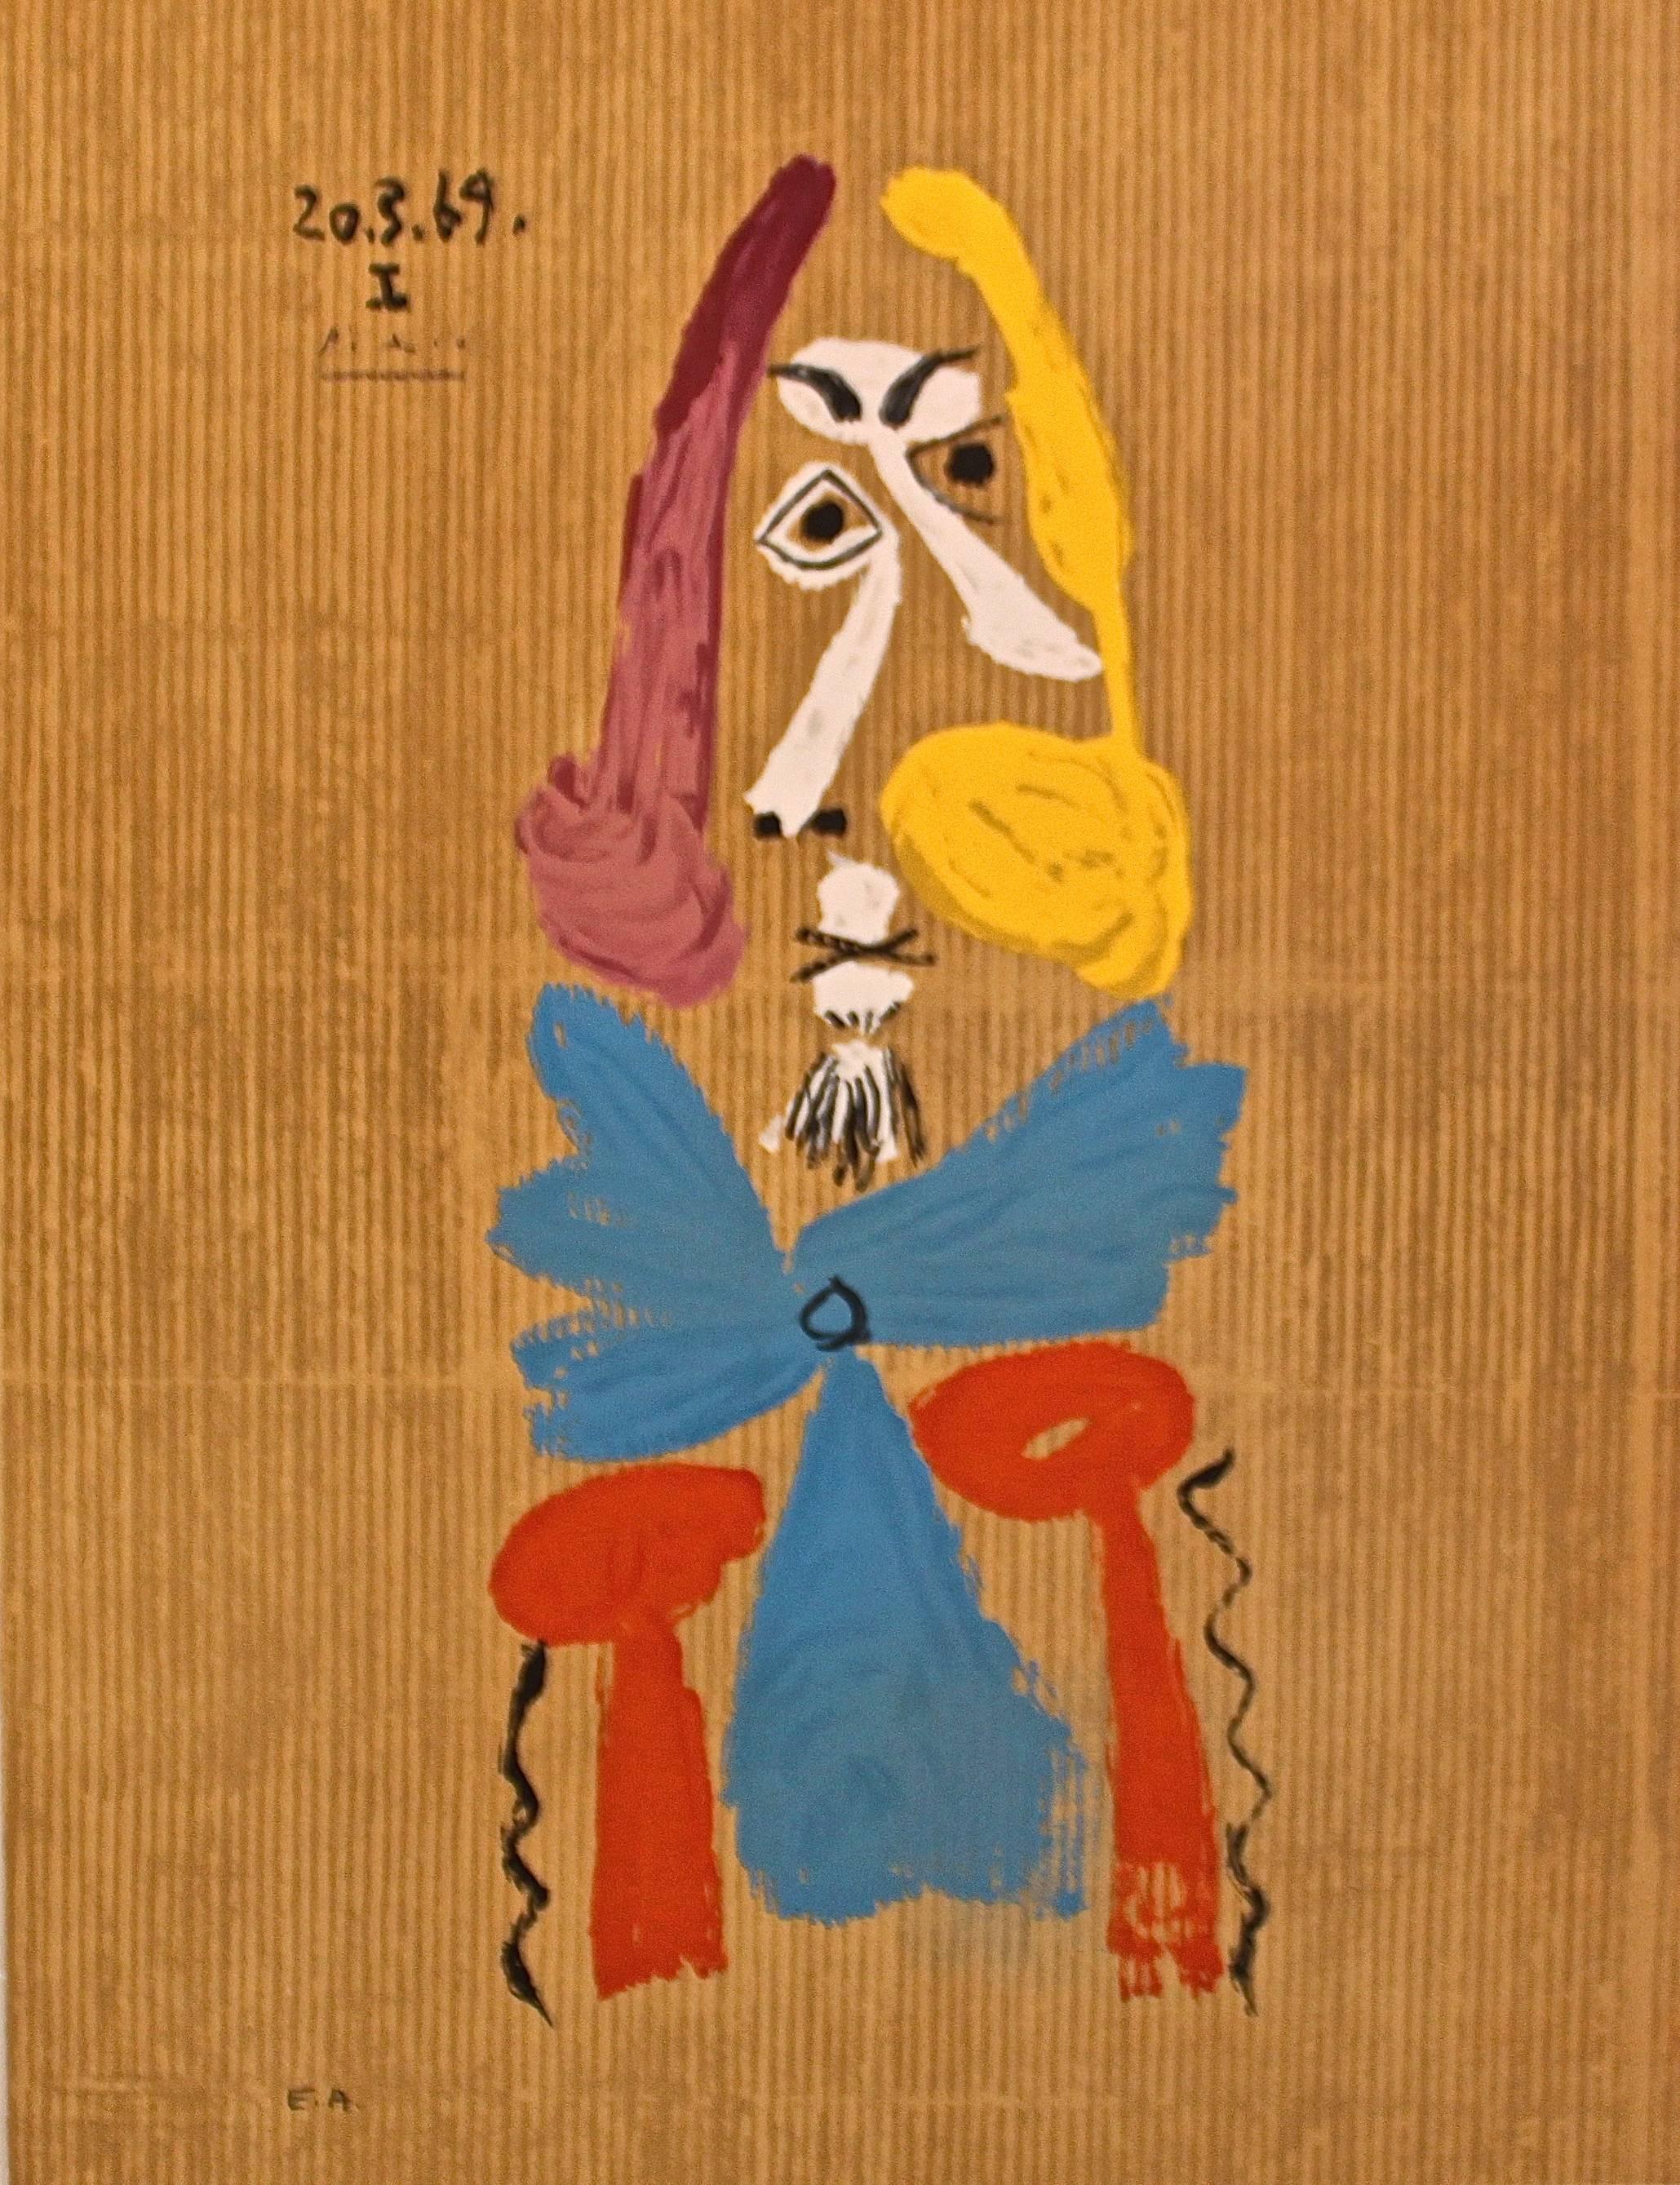 Pablo Picasso Portrait Print - 'Portrait Imaginair 20-3-69 I'